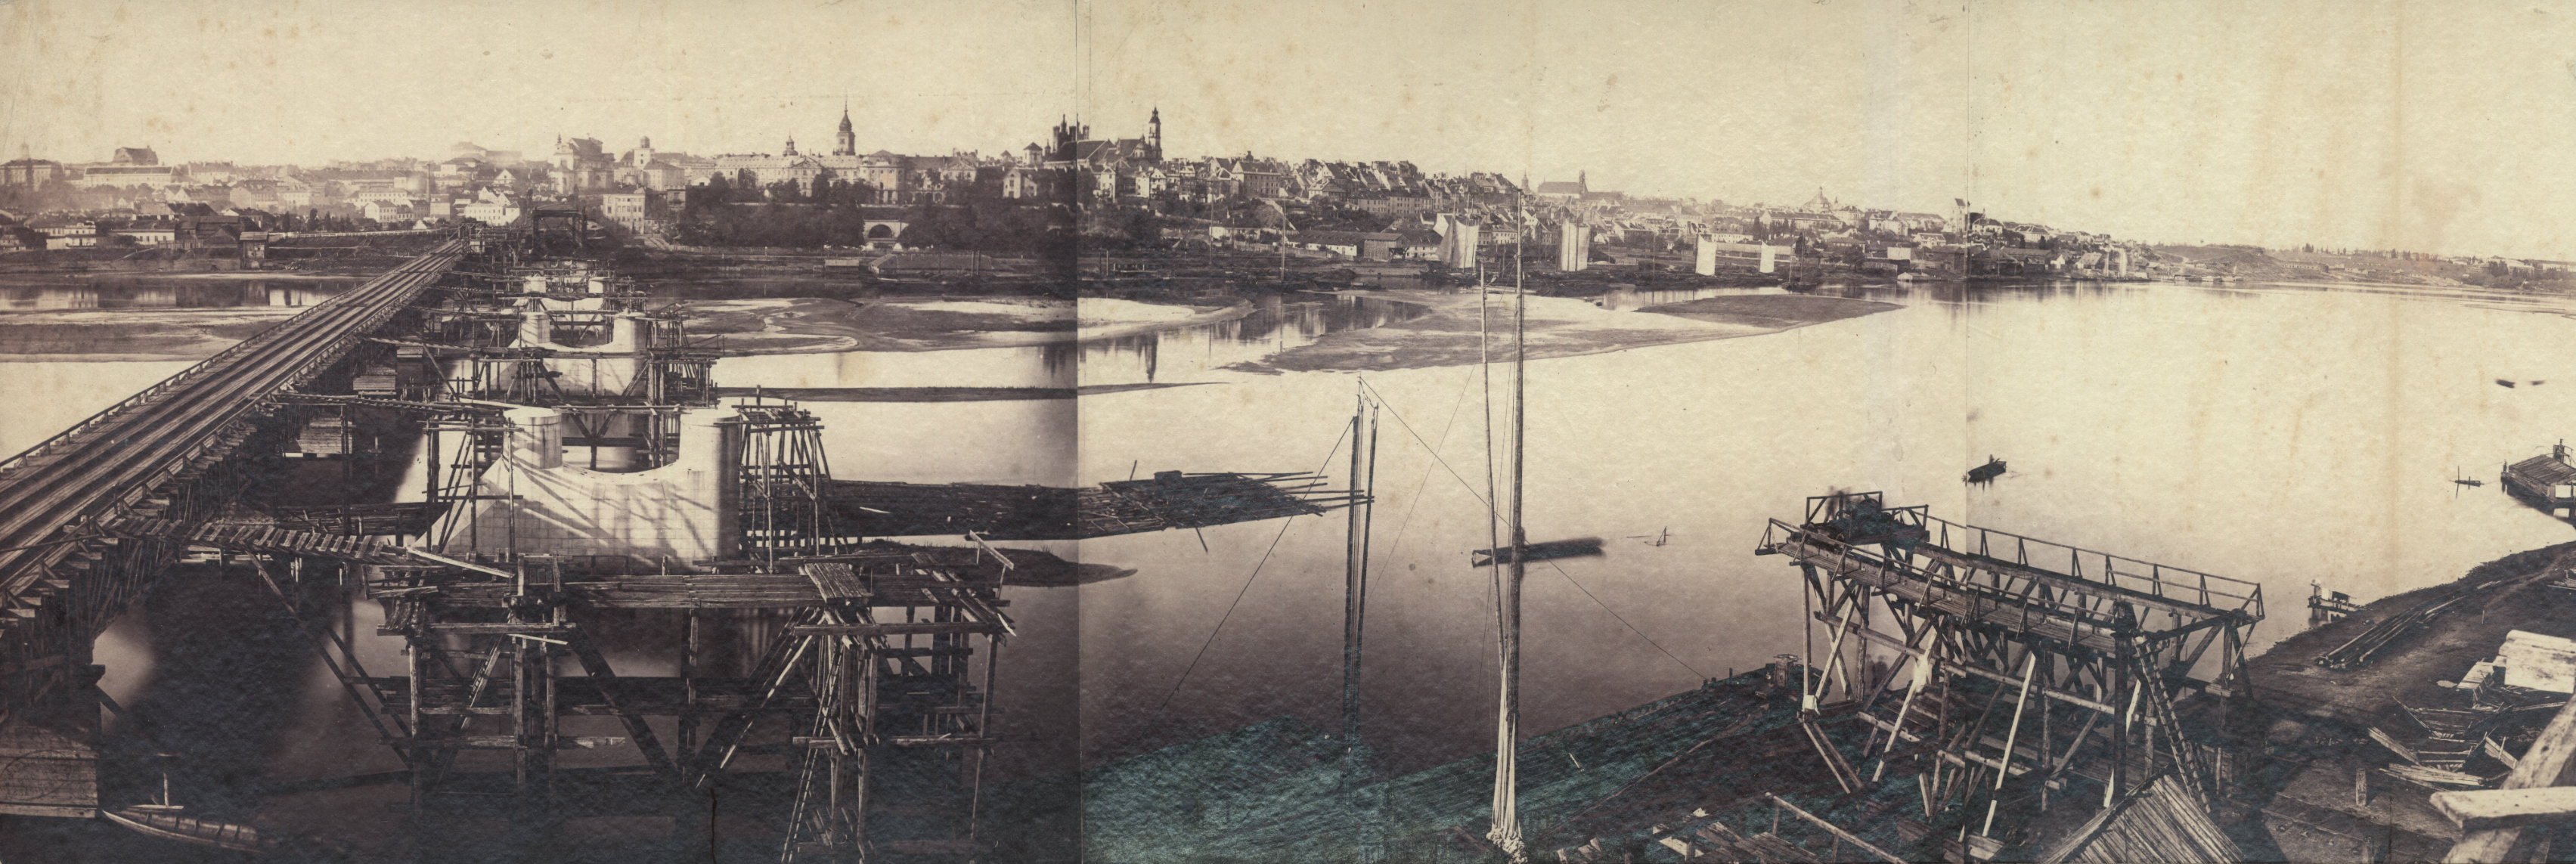 Panorama Warszawy, widziana z perspektywy mostu Kierbedzia - fotografia Karola Beyera z 1863 roku. Foto:Polona